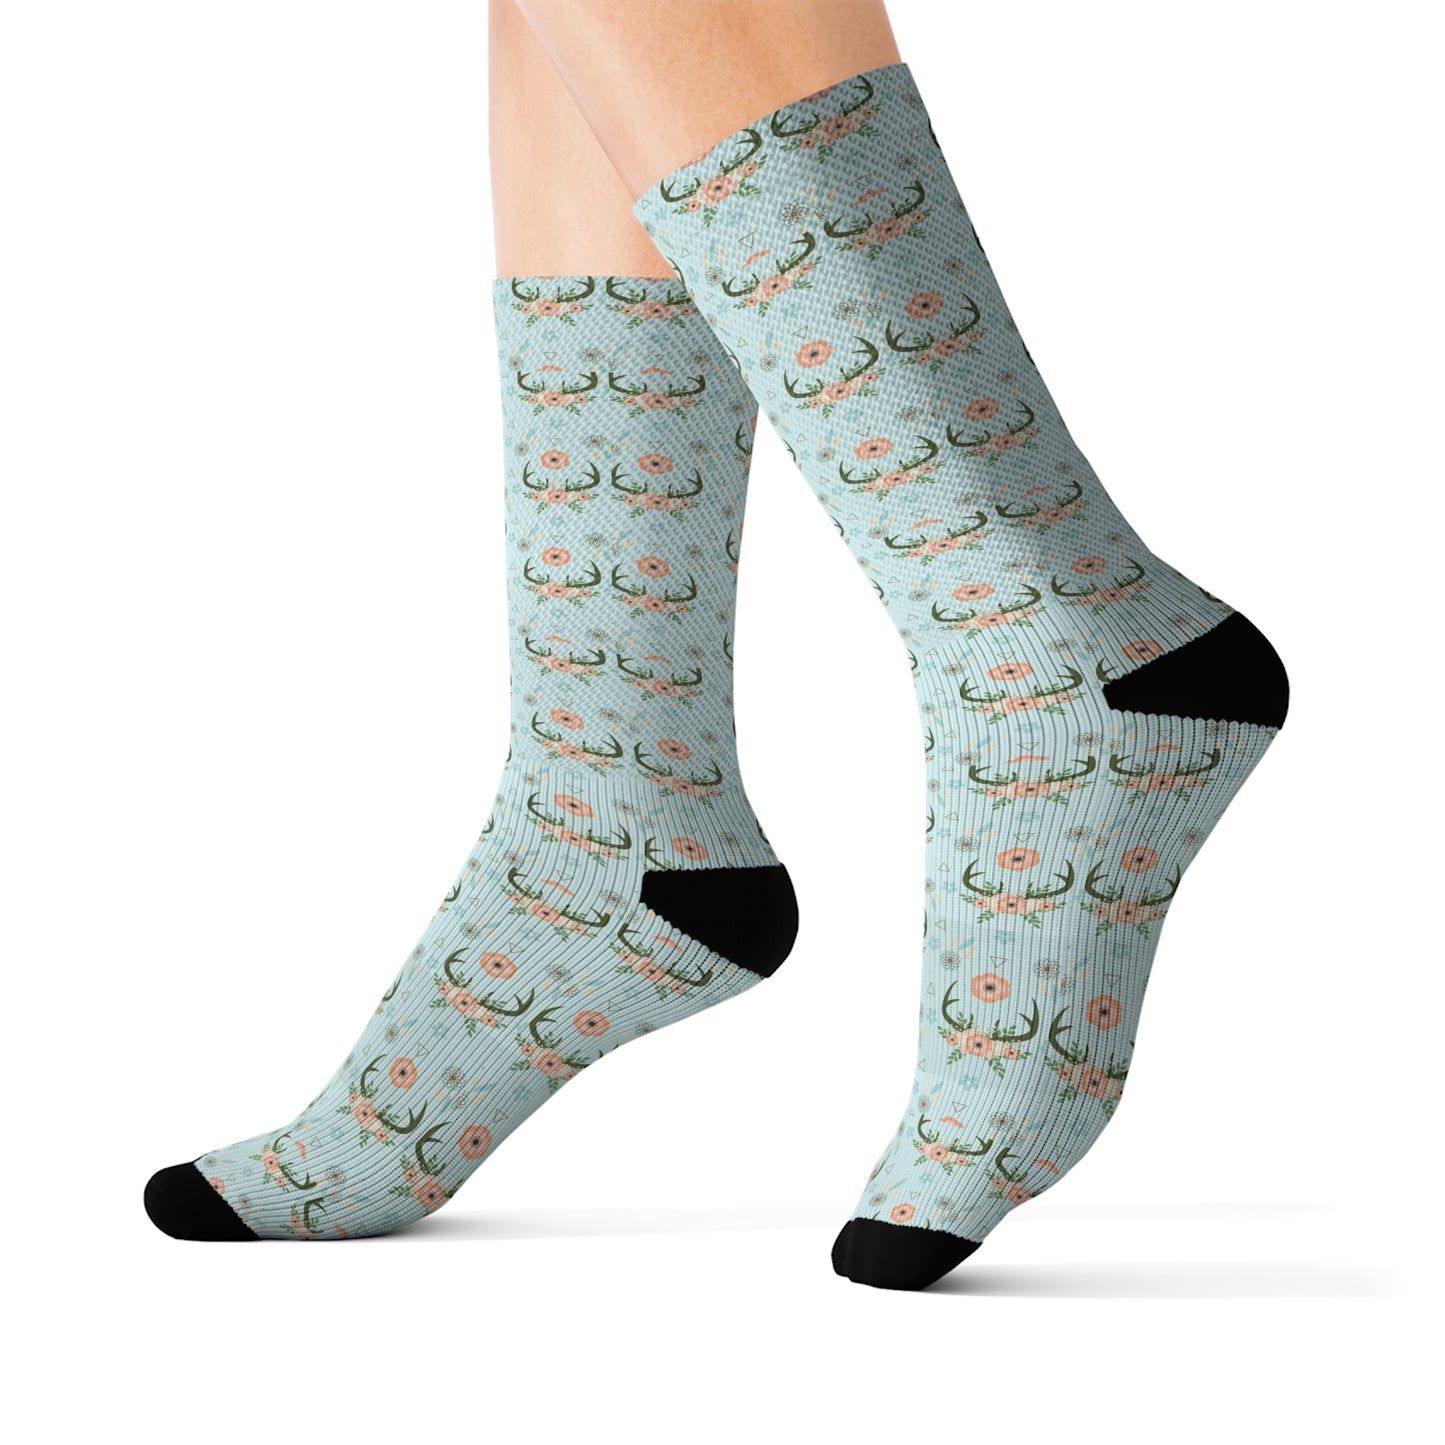 Cool Novelty Socks, Casual Funny Fun Socks, Sublimation Socks for Men Women, Novelty Gift